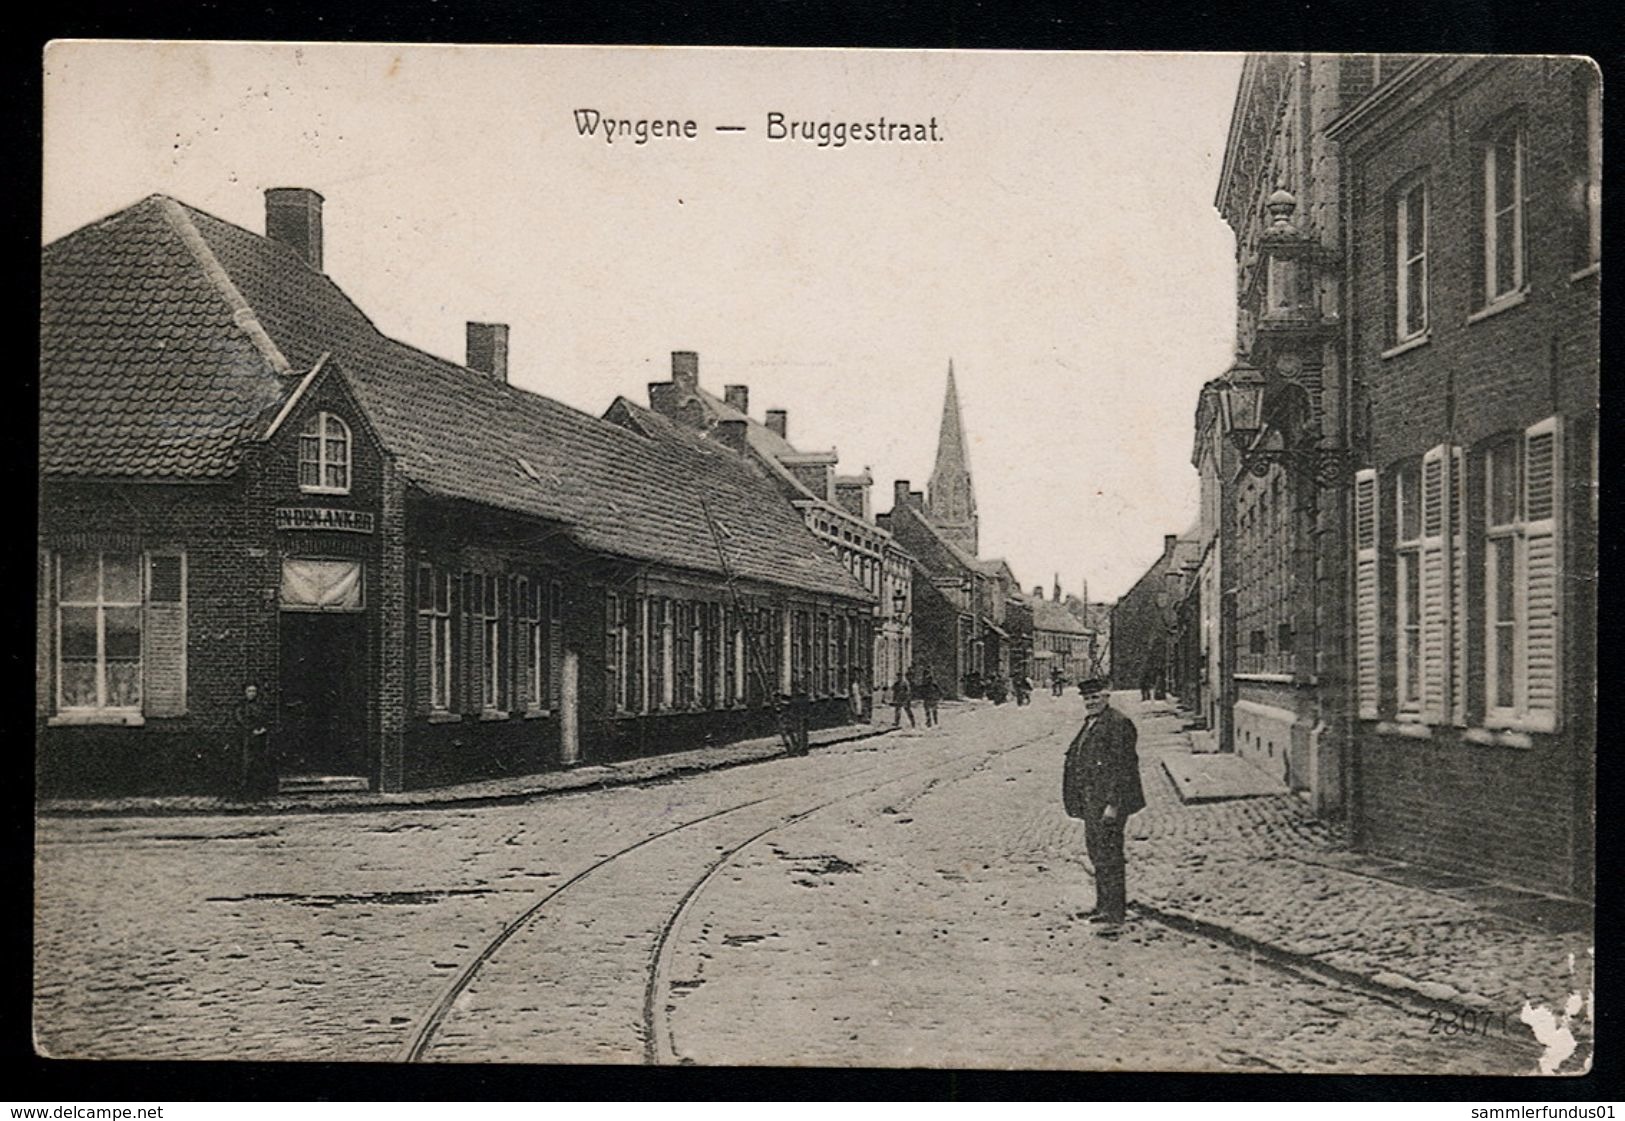 AK/CP Wyngene  Wingene   Bruggestraat   1.WK WW   Gel./circ. 1916    Erh./Cond.  2-    Nr. 00058 - Wingene